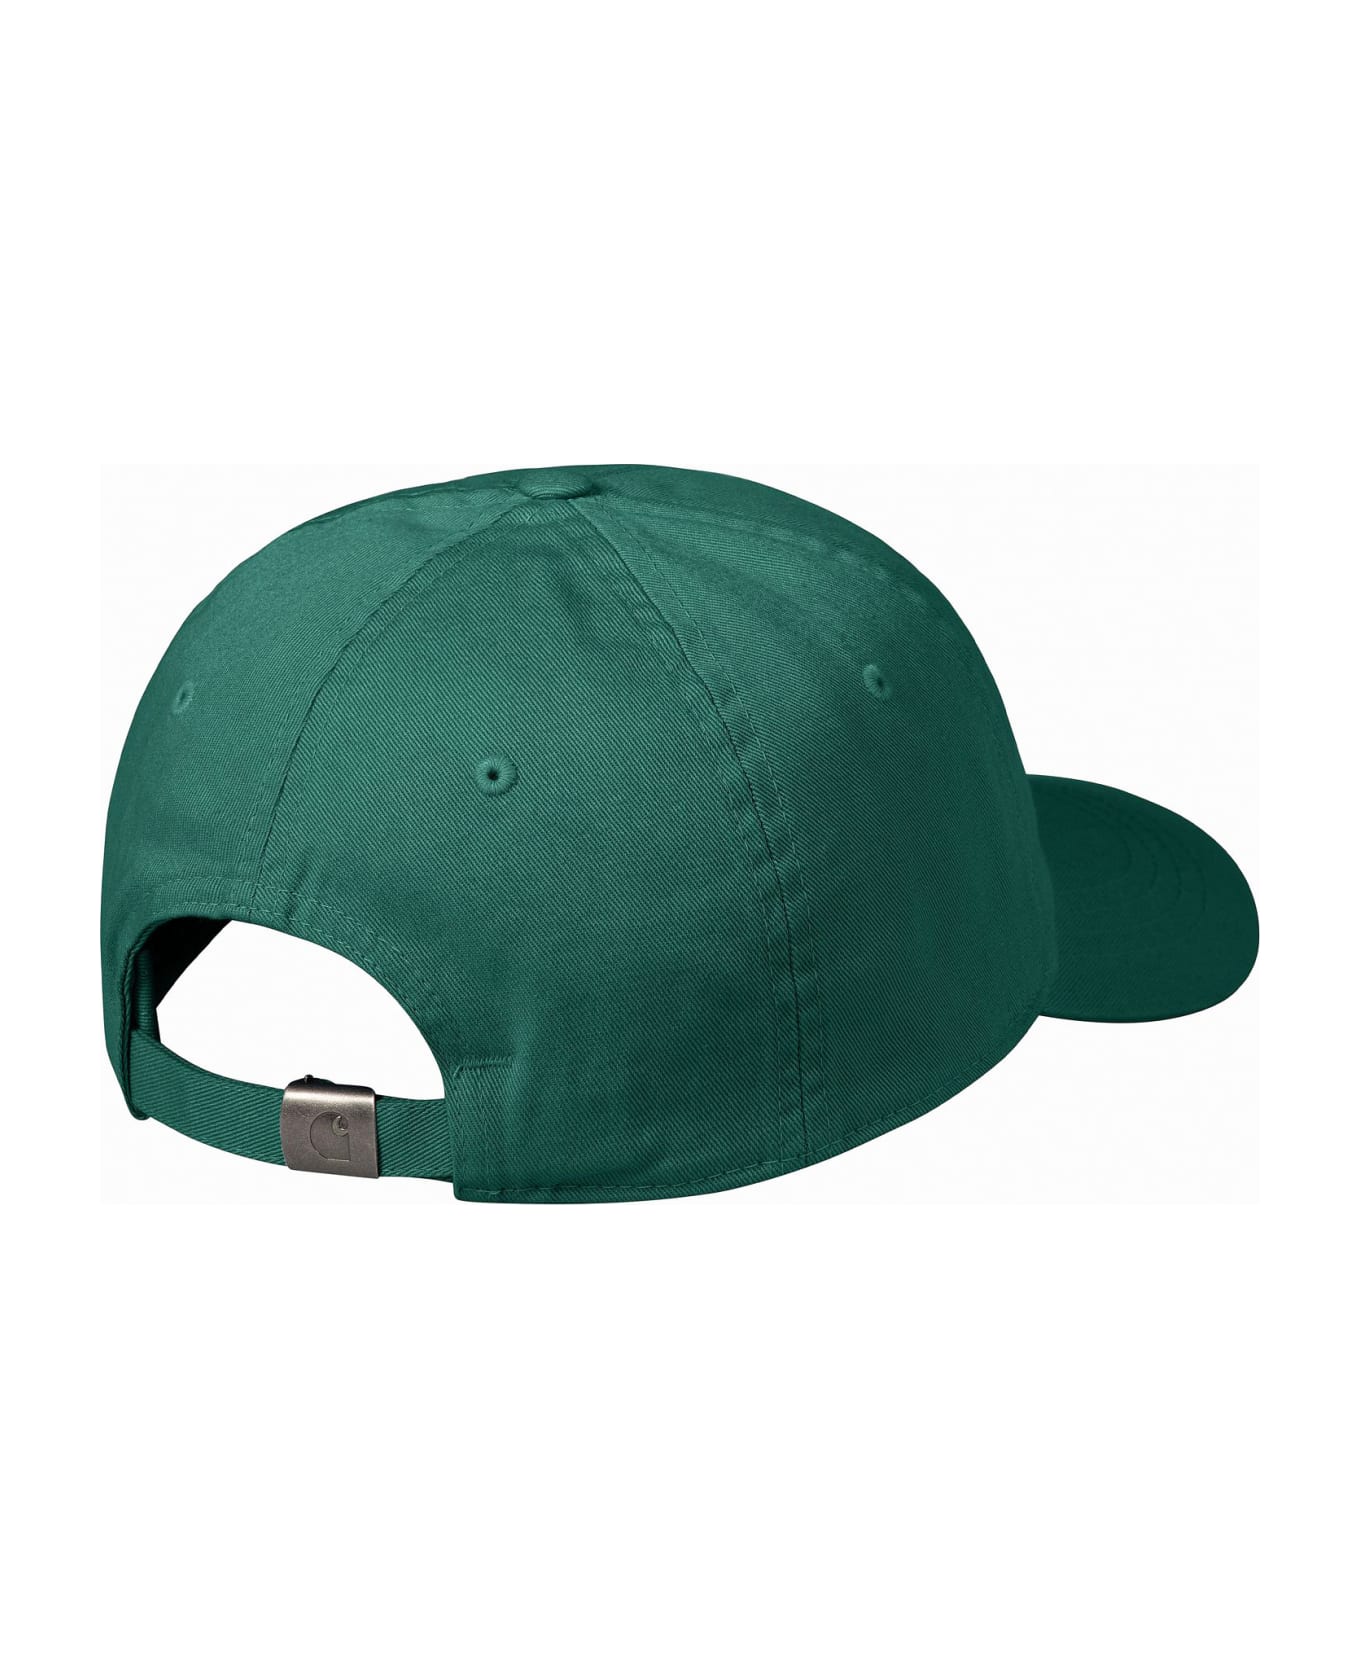 Carhartt Hats Green - Green